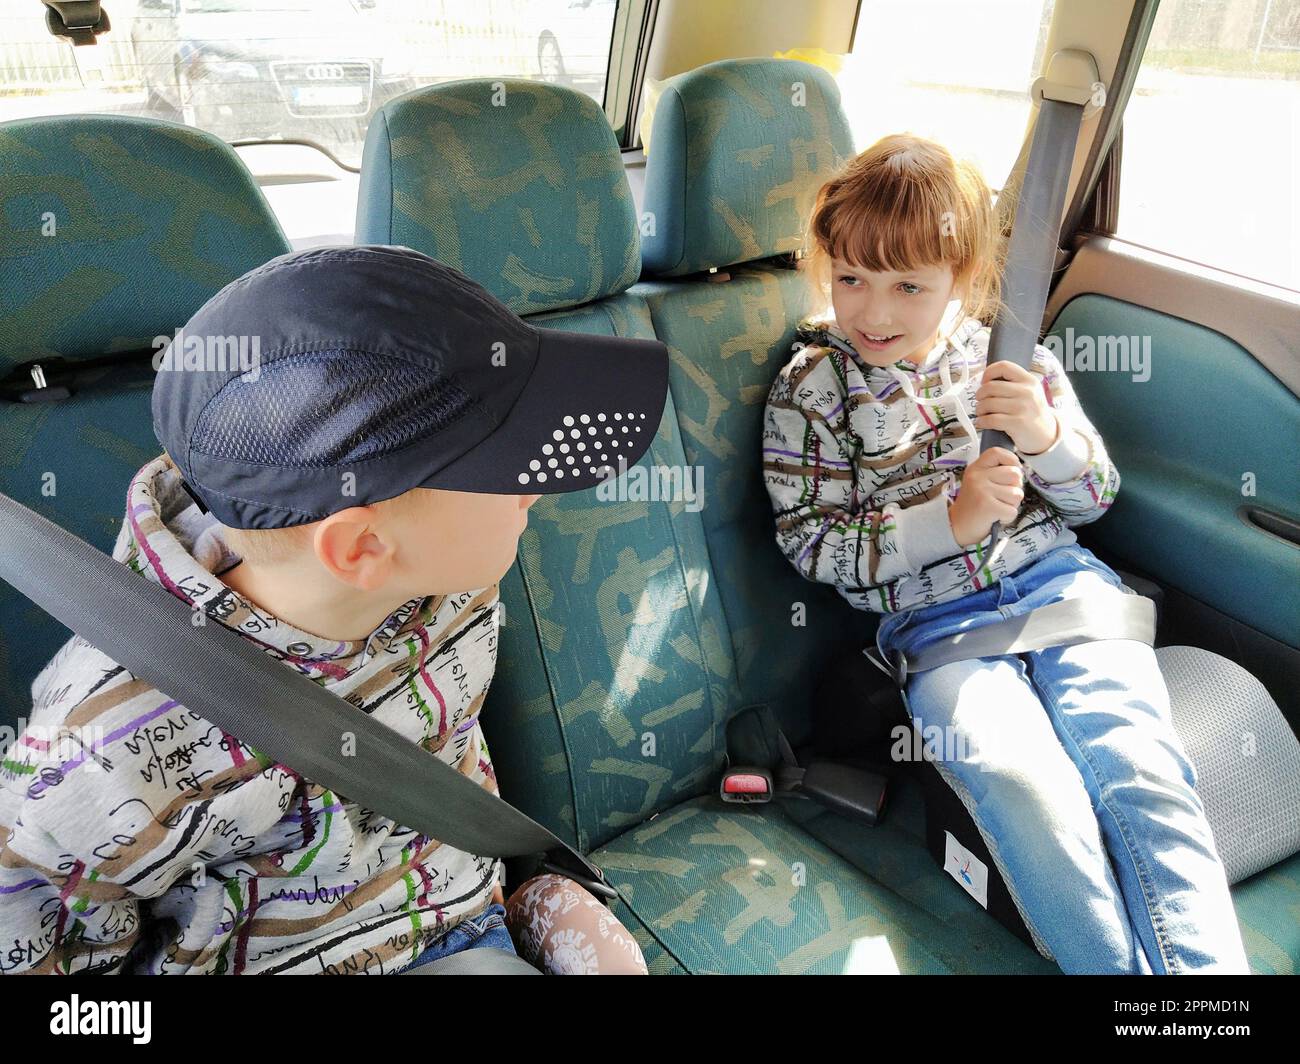 Kinder im Auto. Ein Junge und ein Mädchen sitzen auf dem Rücksitz, lachen und grimpern. Kinder schnallen sich an. Ein Kind mit Mütze. Zwillinge mit verschiedenen Gesichtern, die in derselben Kleidung gekleidet sind Stockfoto